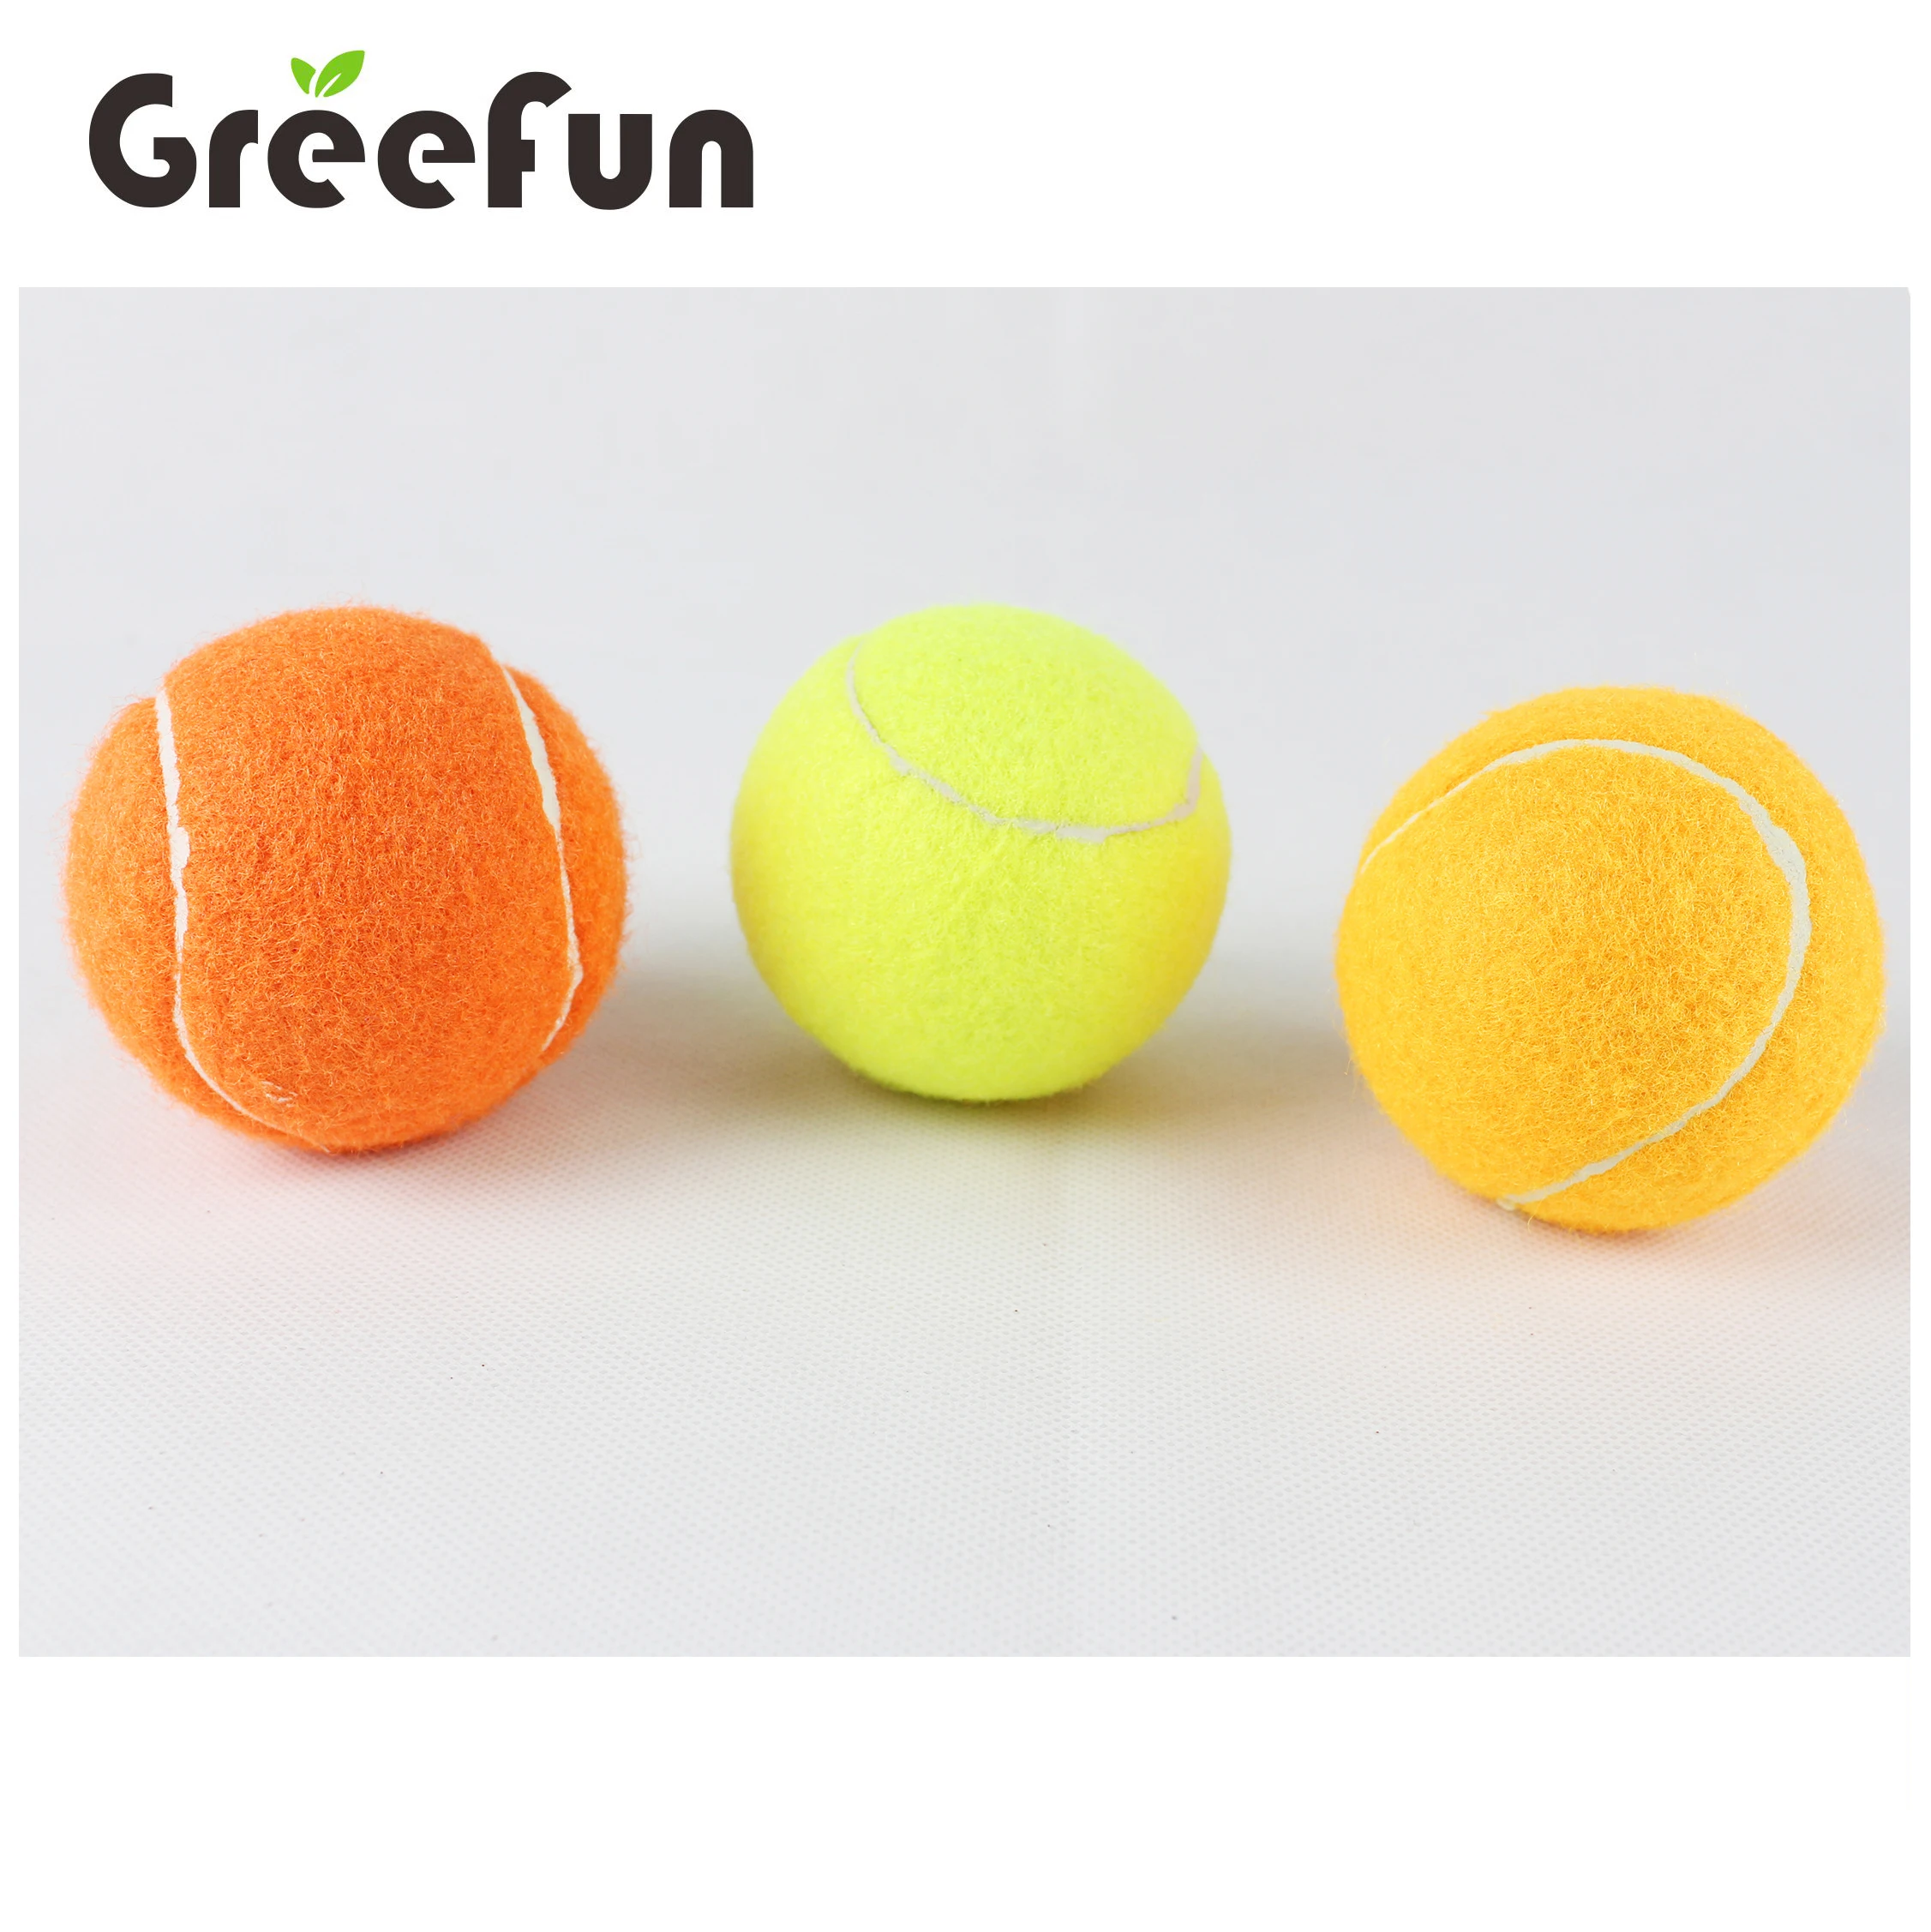  Низкий минимальный объем заказа рекламные теннисные мячи на заказ тренировочные для оптовой продажи доступны черные разных